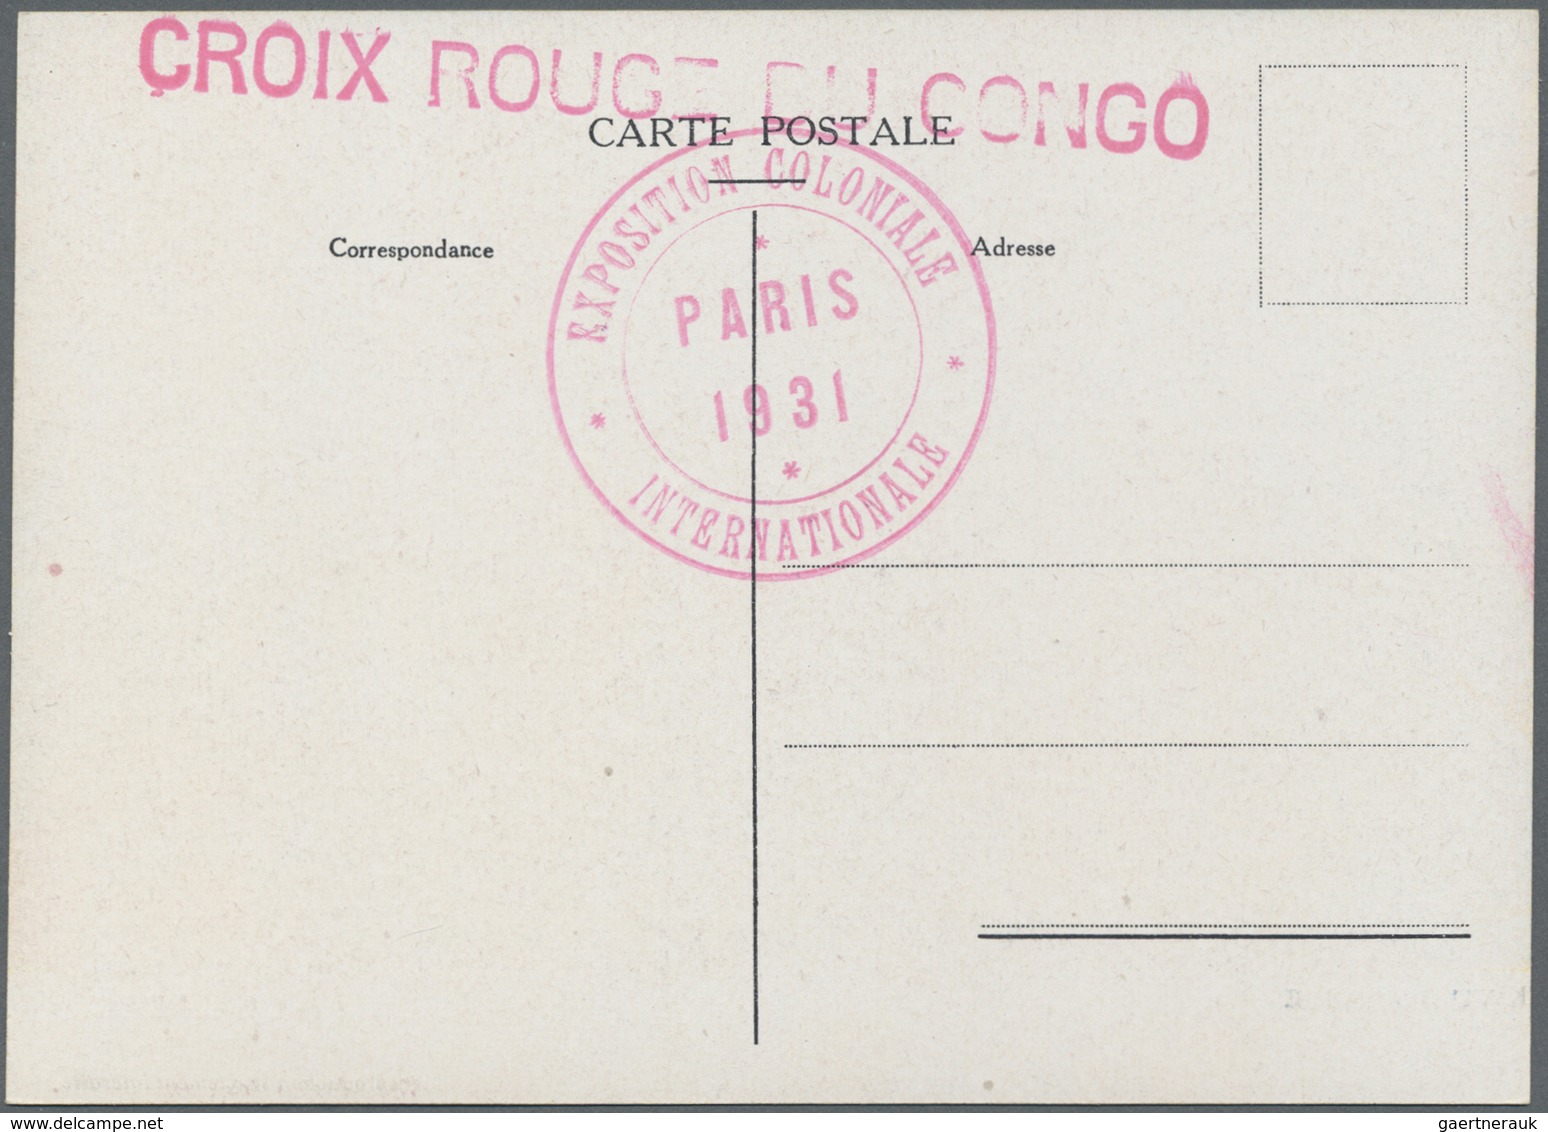 Thematik: Rotes Kreuz / red cross: 1931, Serie von 14 Ansichtskarten mit Umschlag zum Thema Rotes Kr